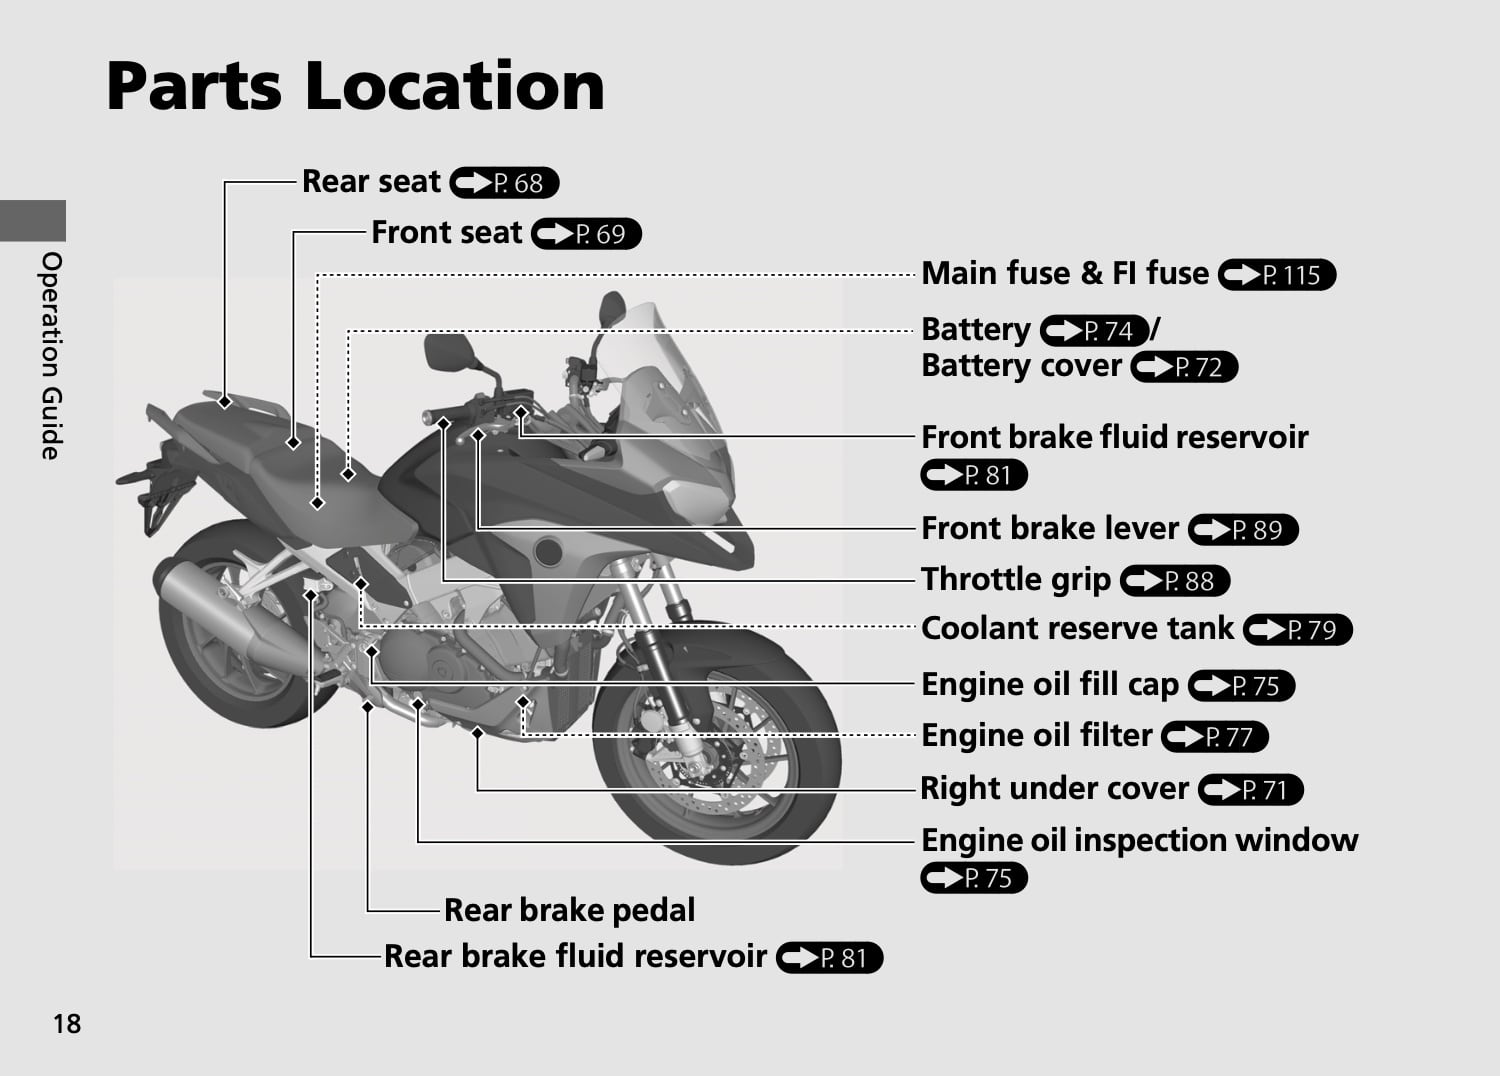 Honda VFR800X Crossrunner 2nd gen 2015 Maintenance Schedule Screenshot from manual 1